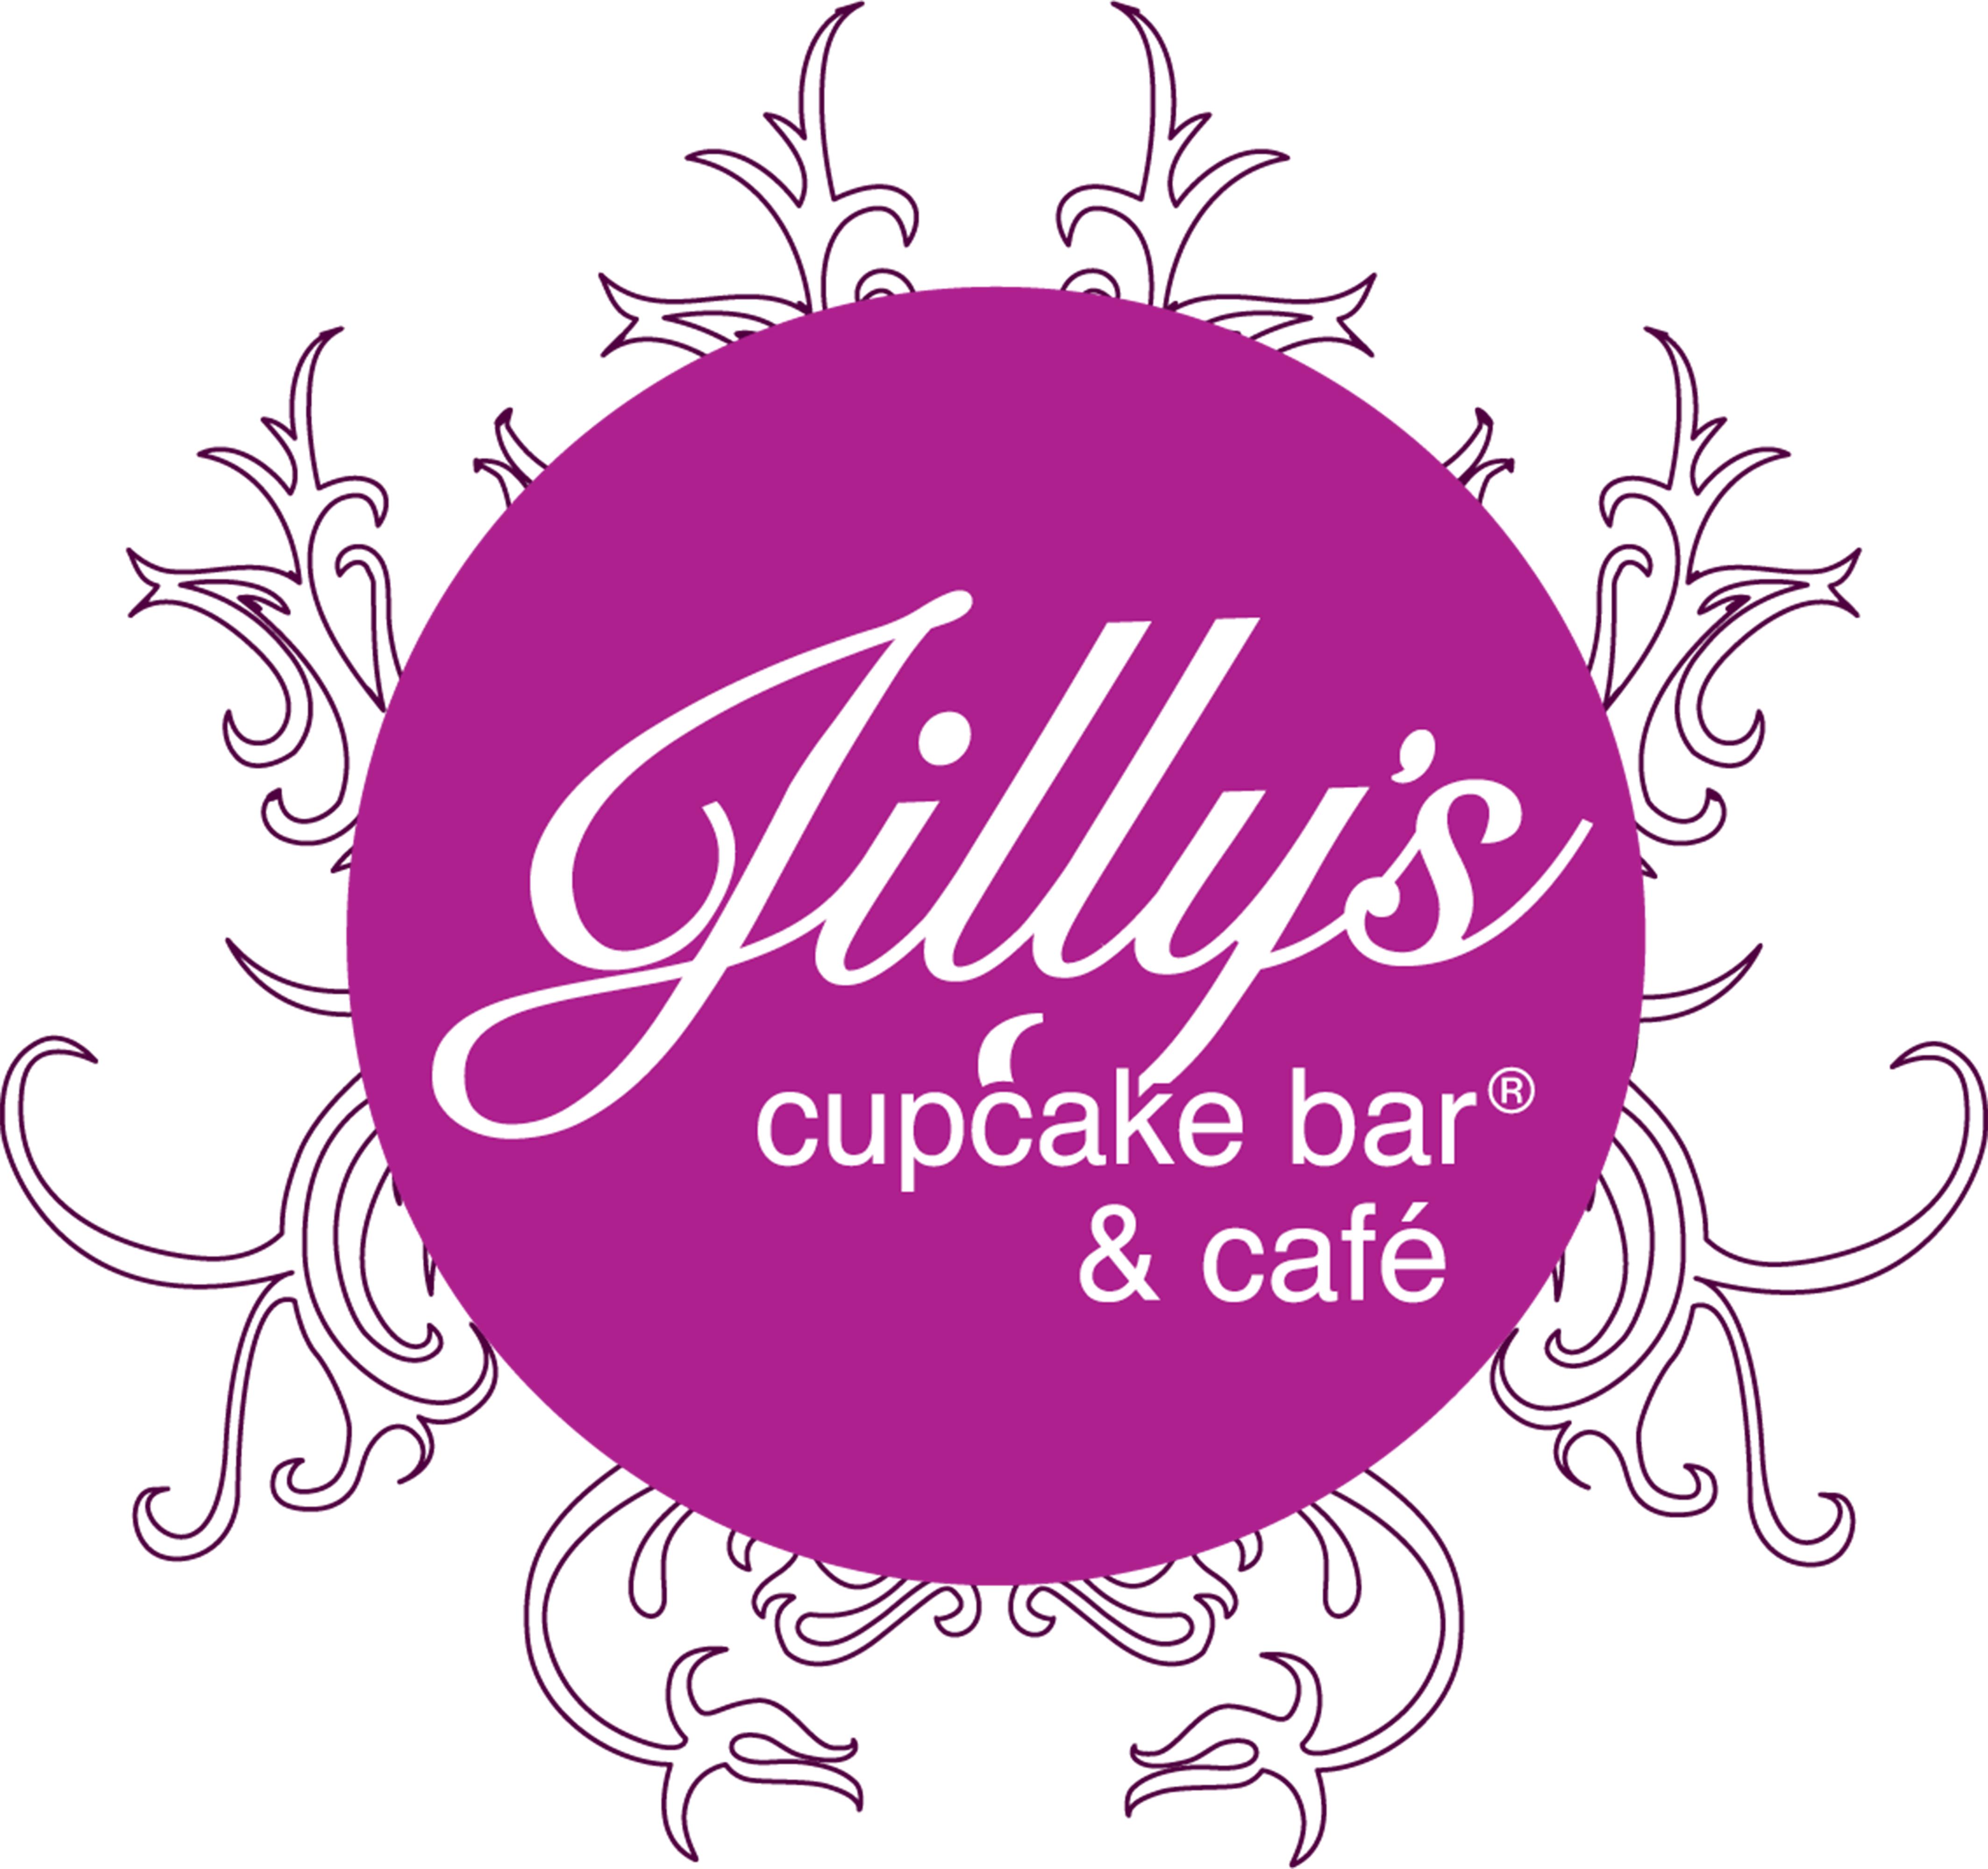 Jilly's Cupcake Bar